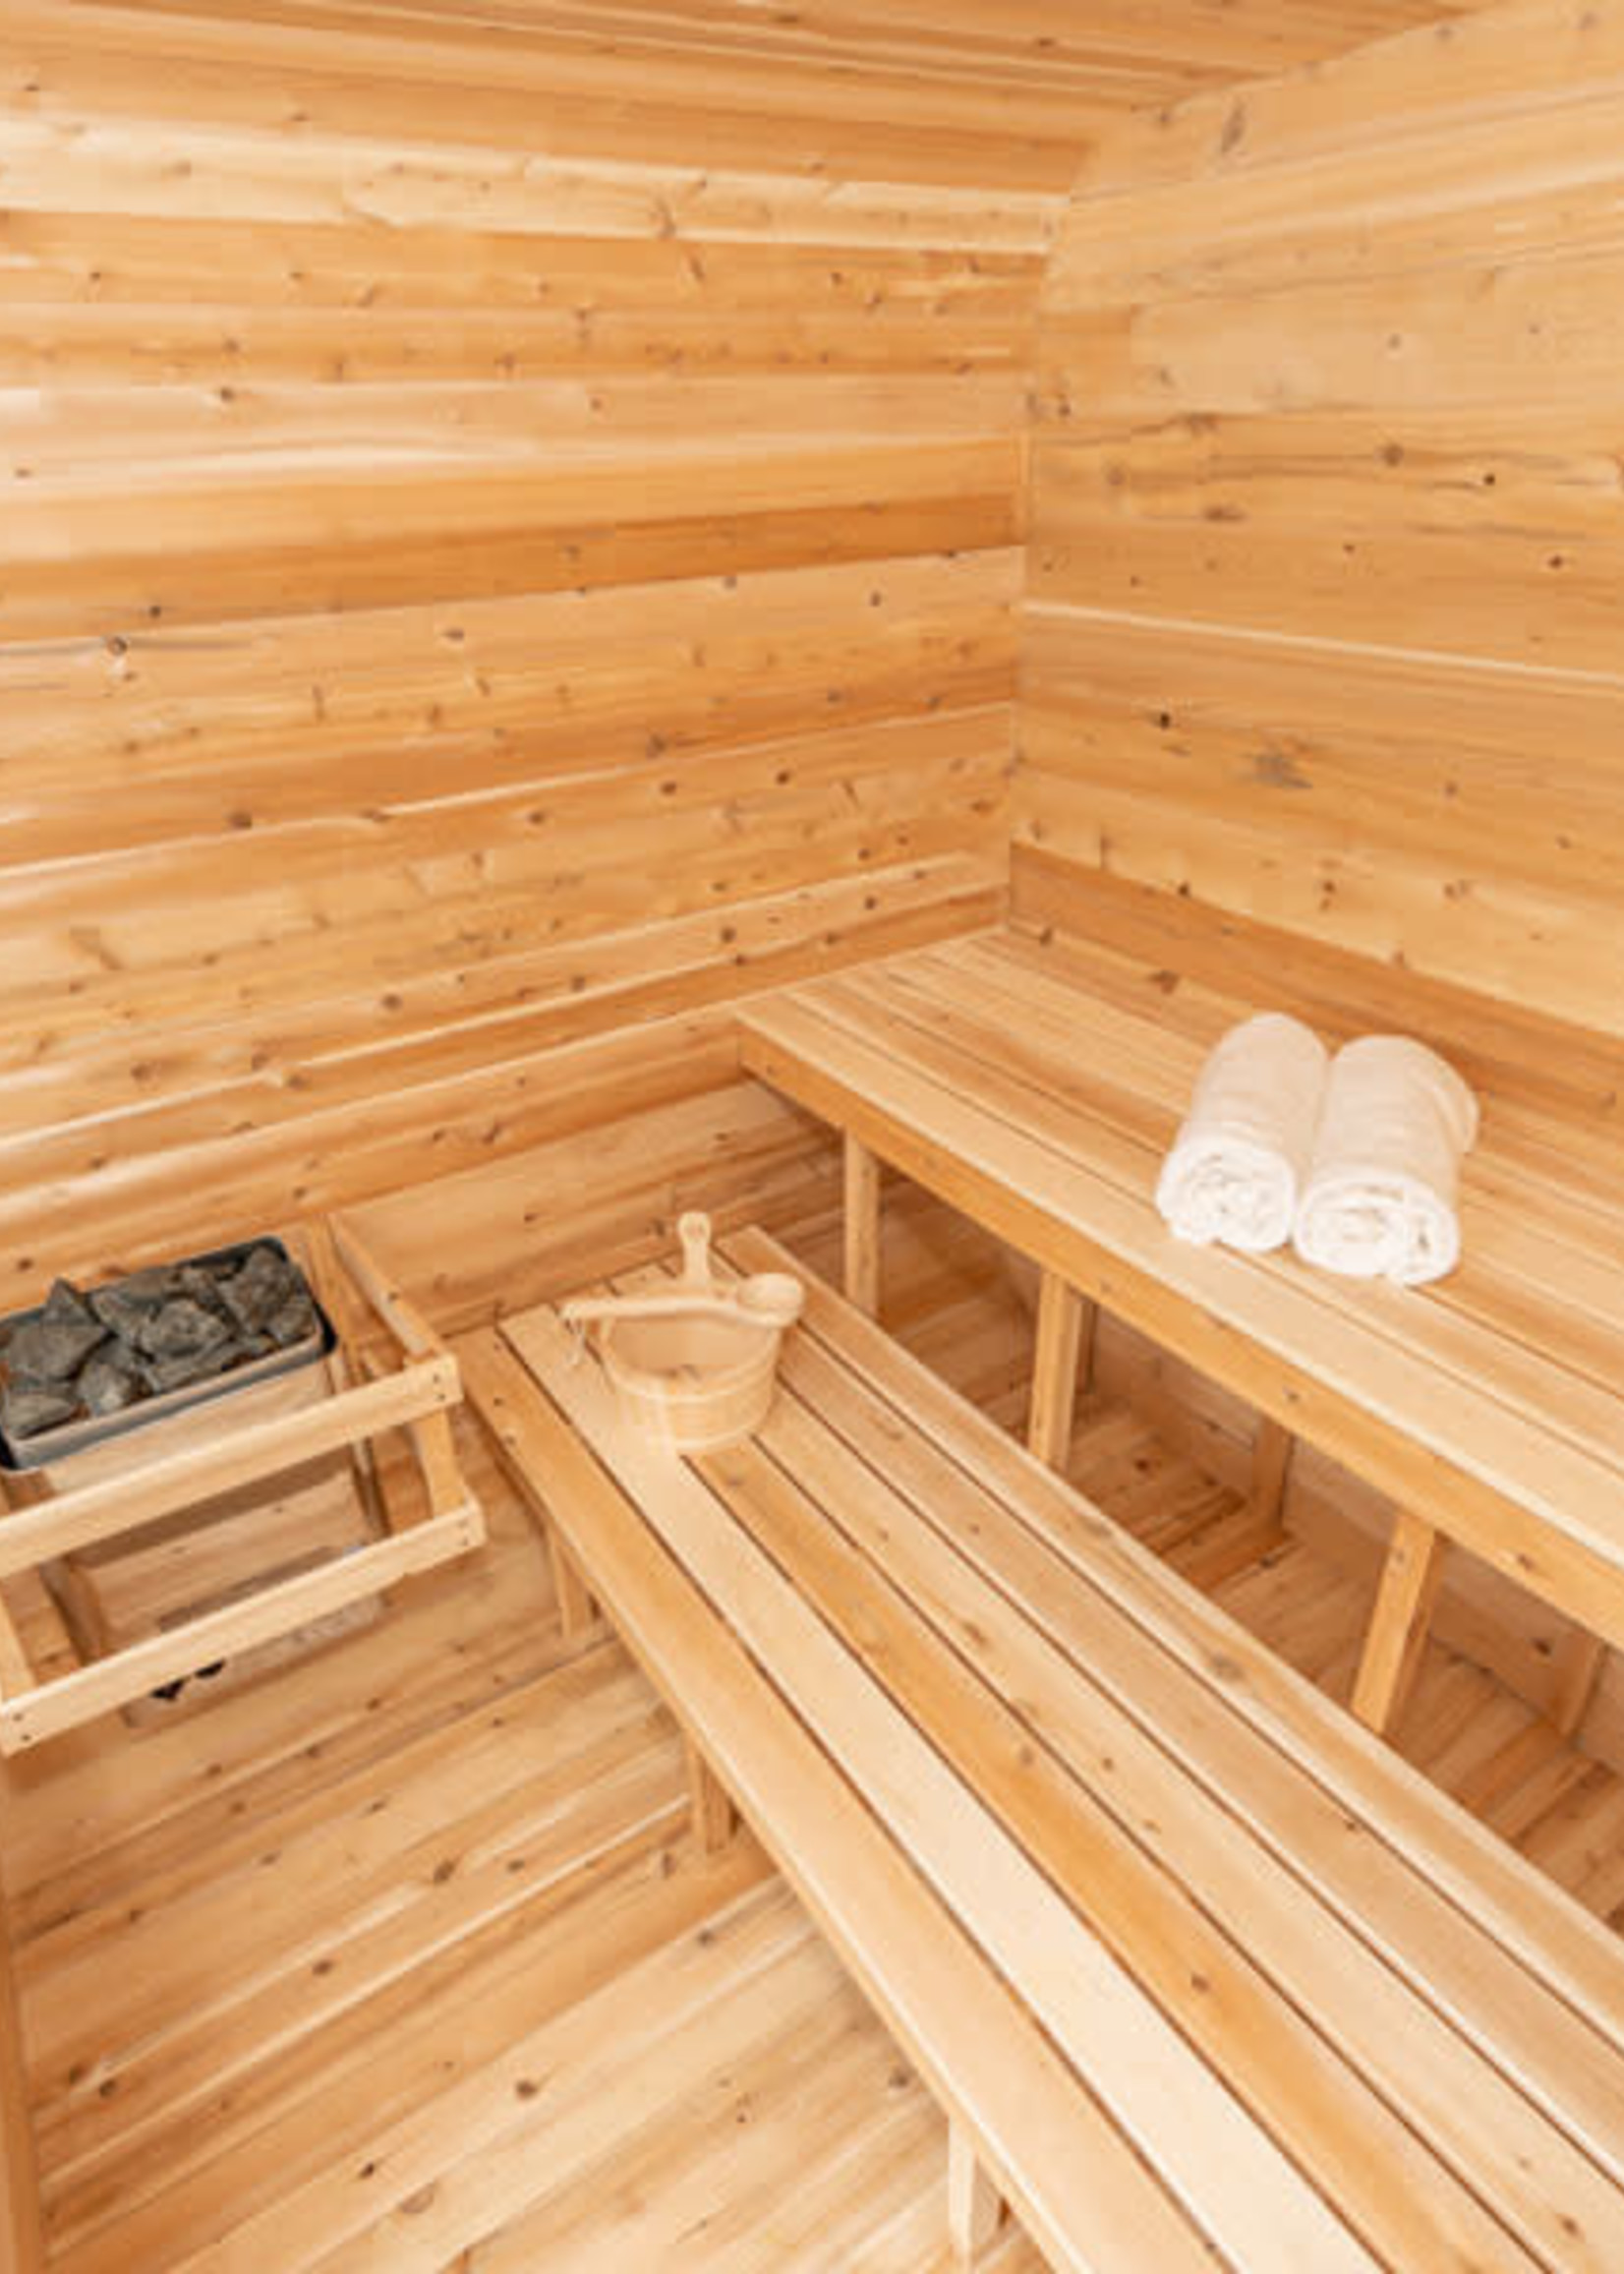 Leisure Craft Canadian Timber Luna Sauna